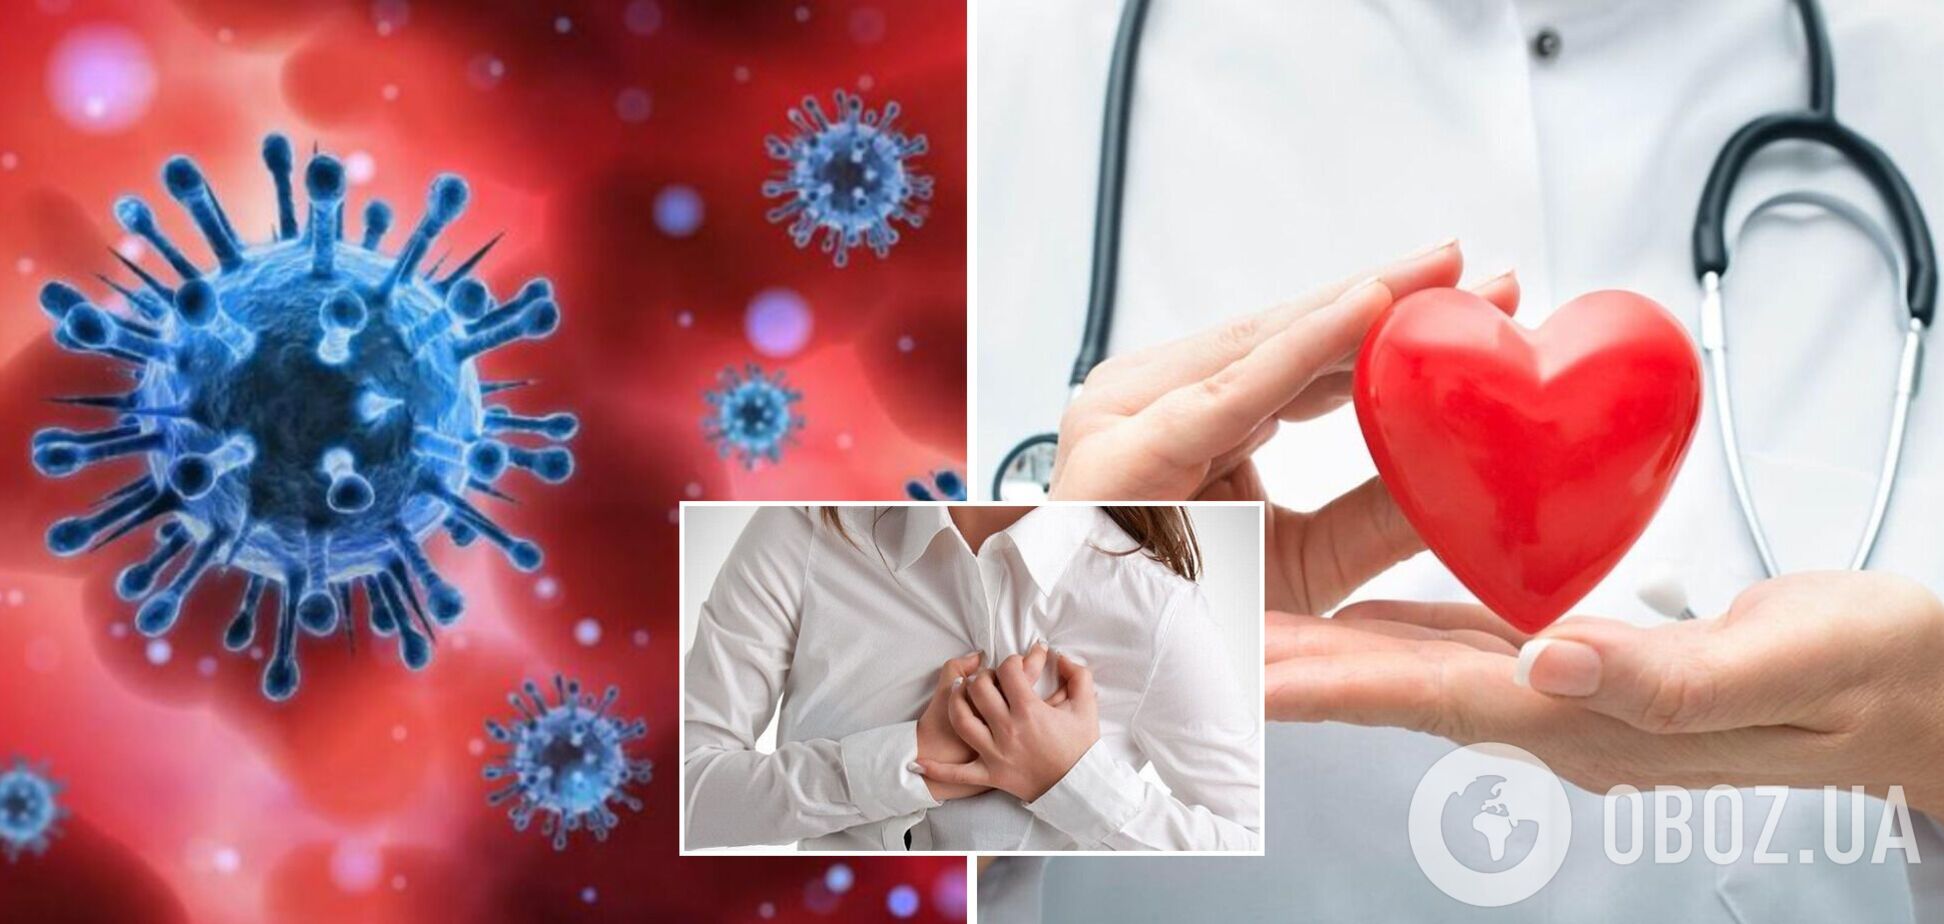 Коронавирус учащает риск сердечных заболеваний